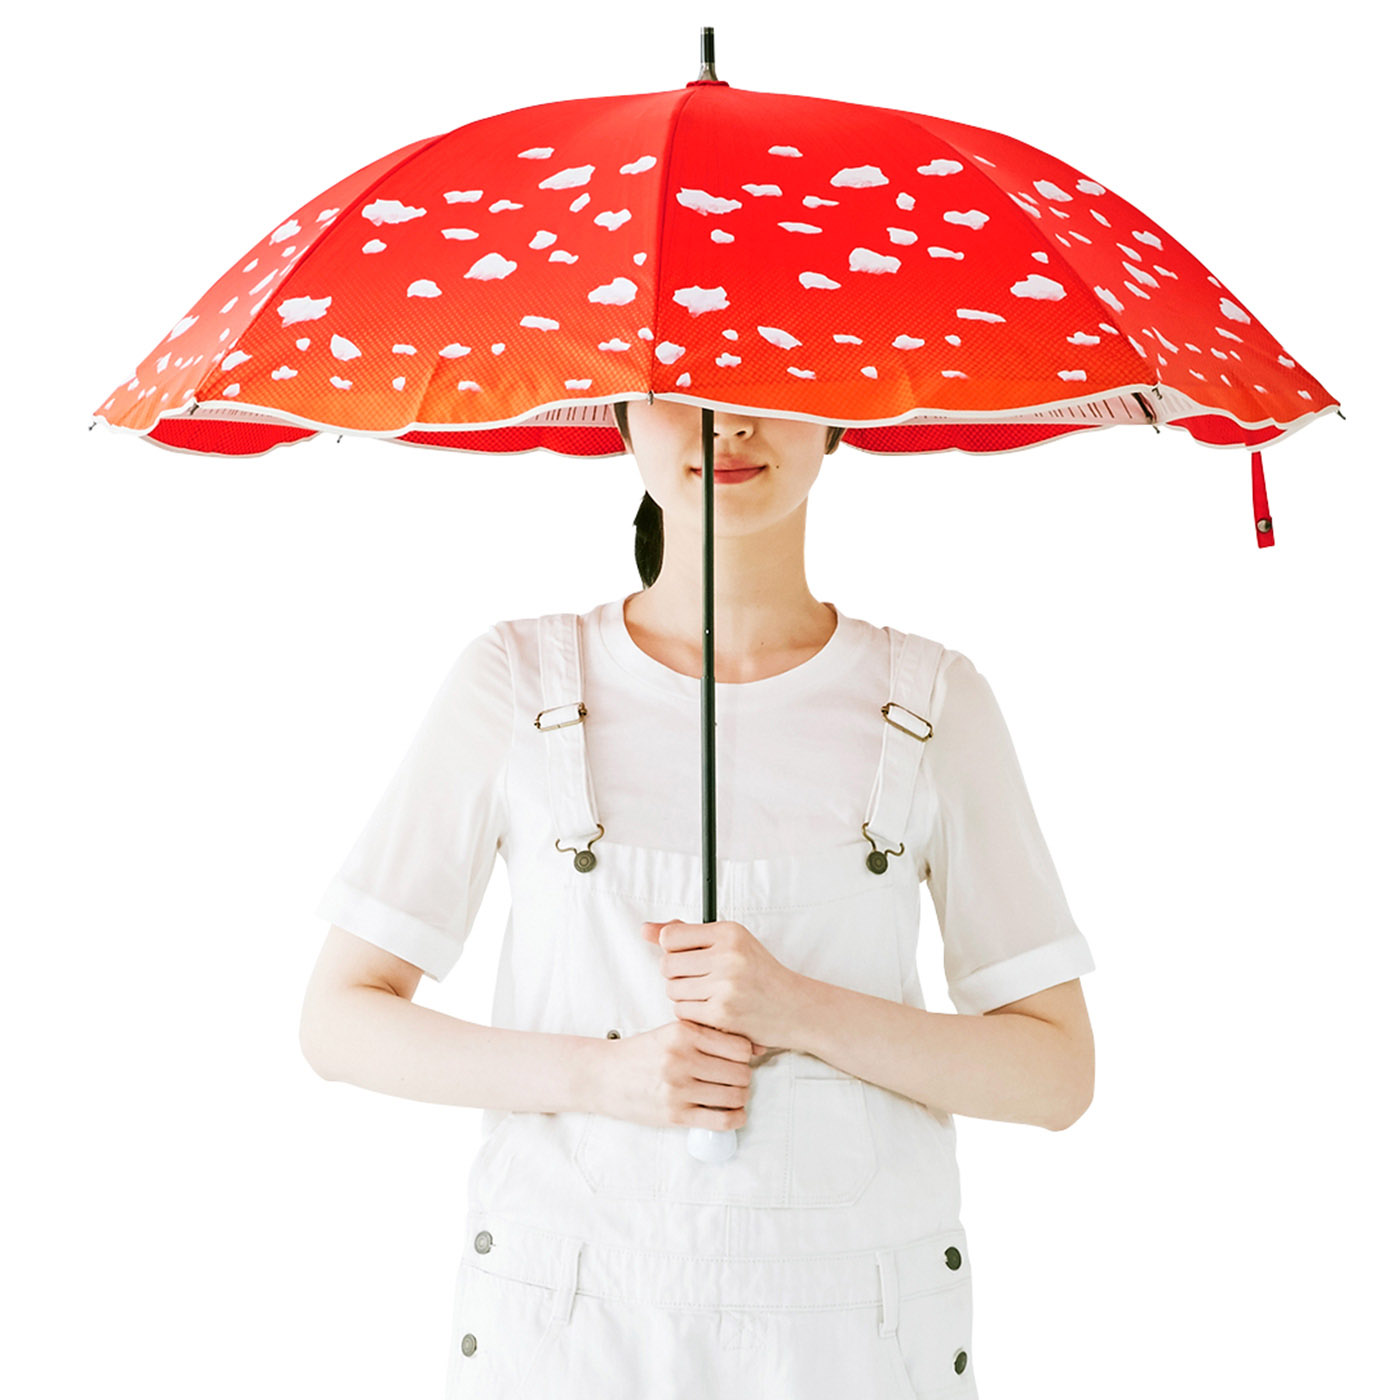 ひらけばキノコになれる……「晴雨兼用 ベニテングタケの傘」が 